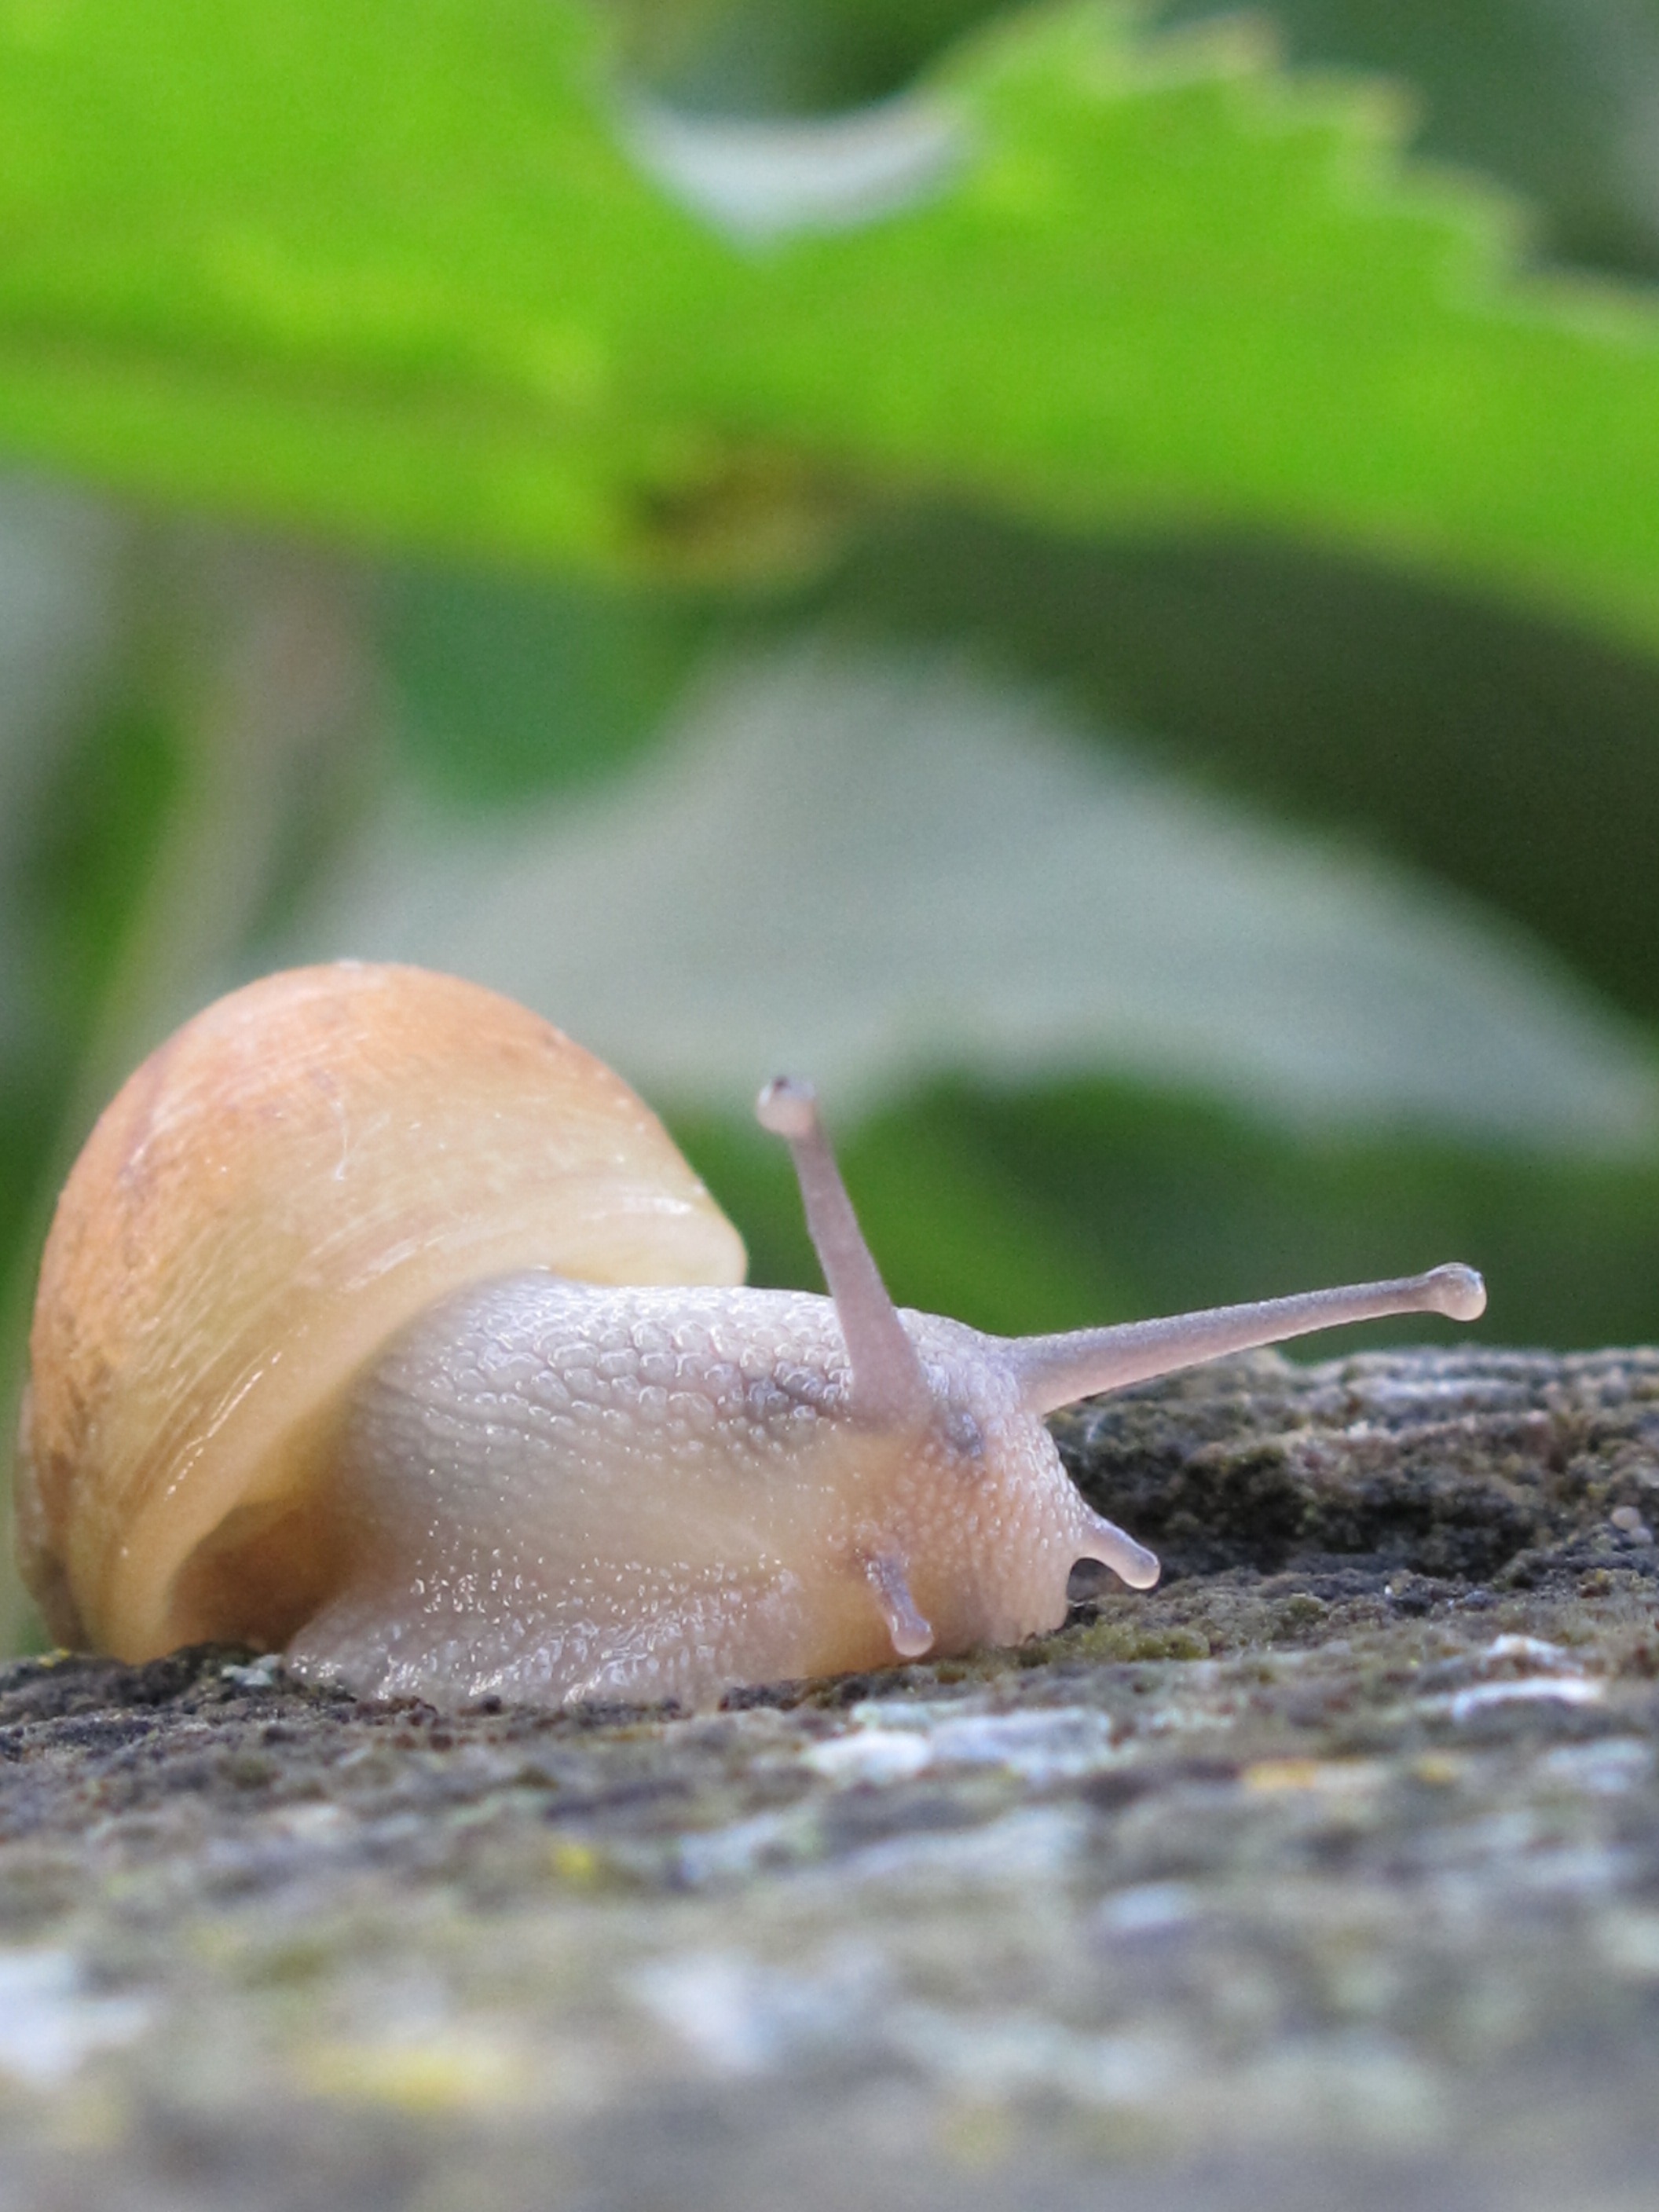 snail on brown wood beside green leaves